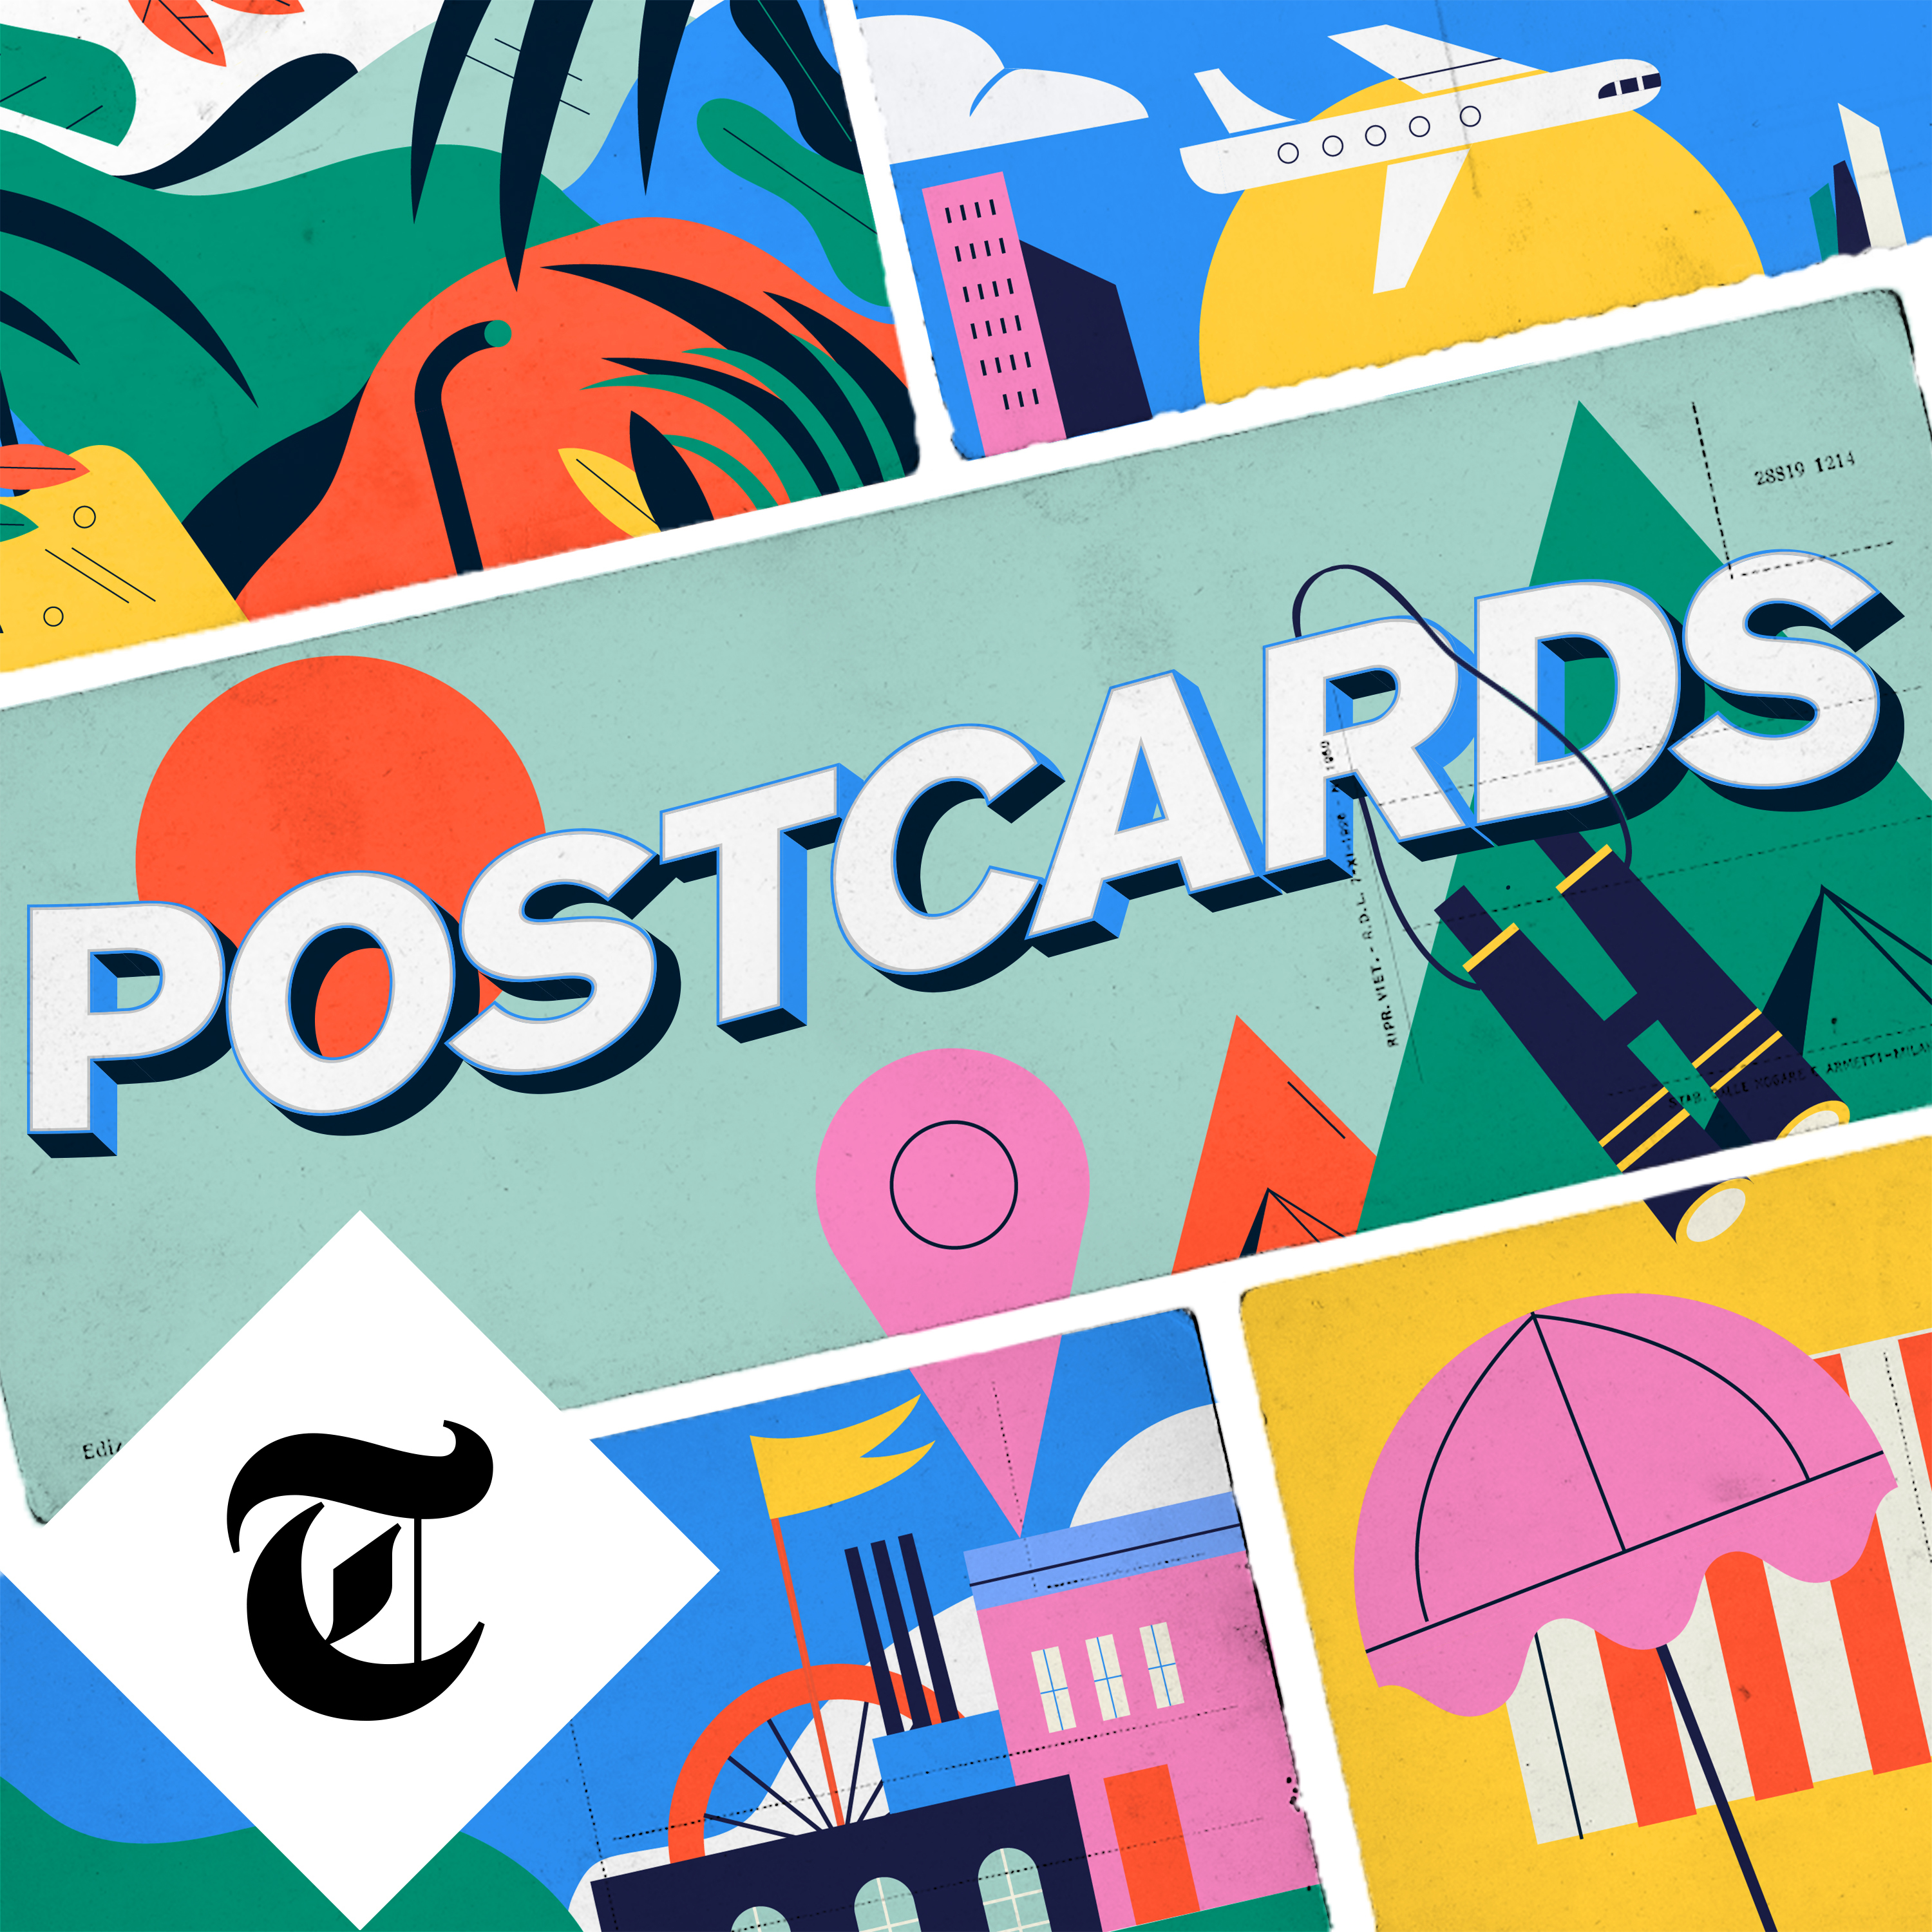 Introducing Postcards